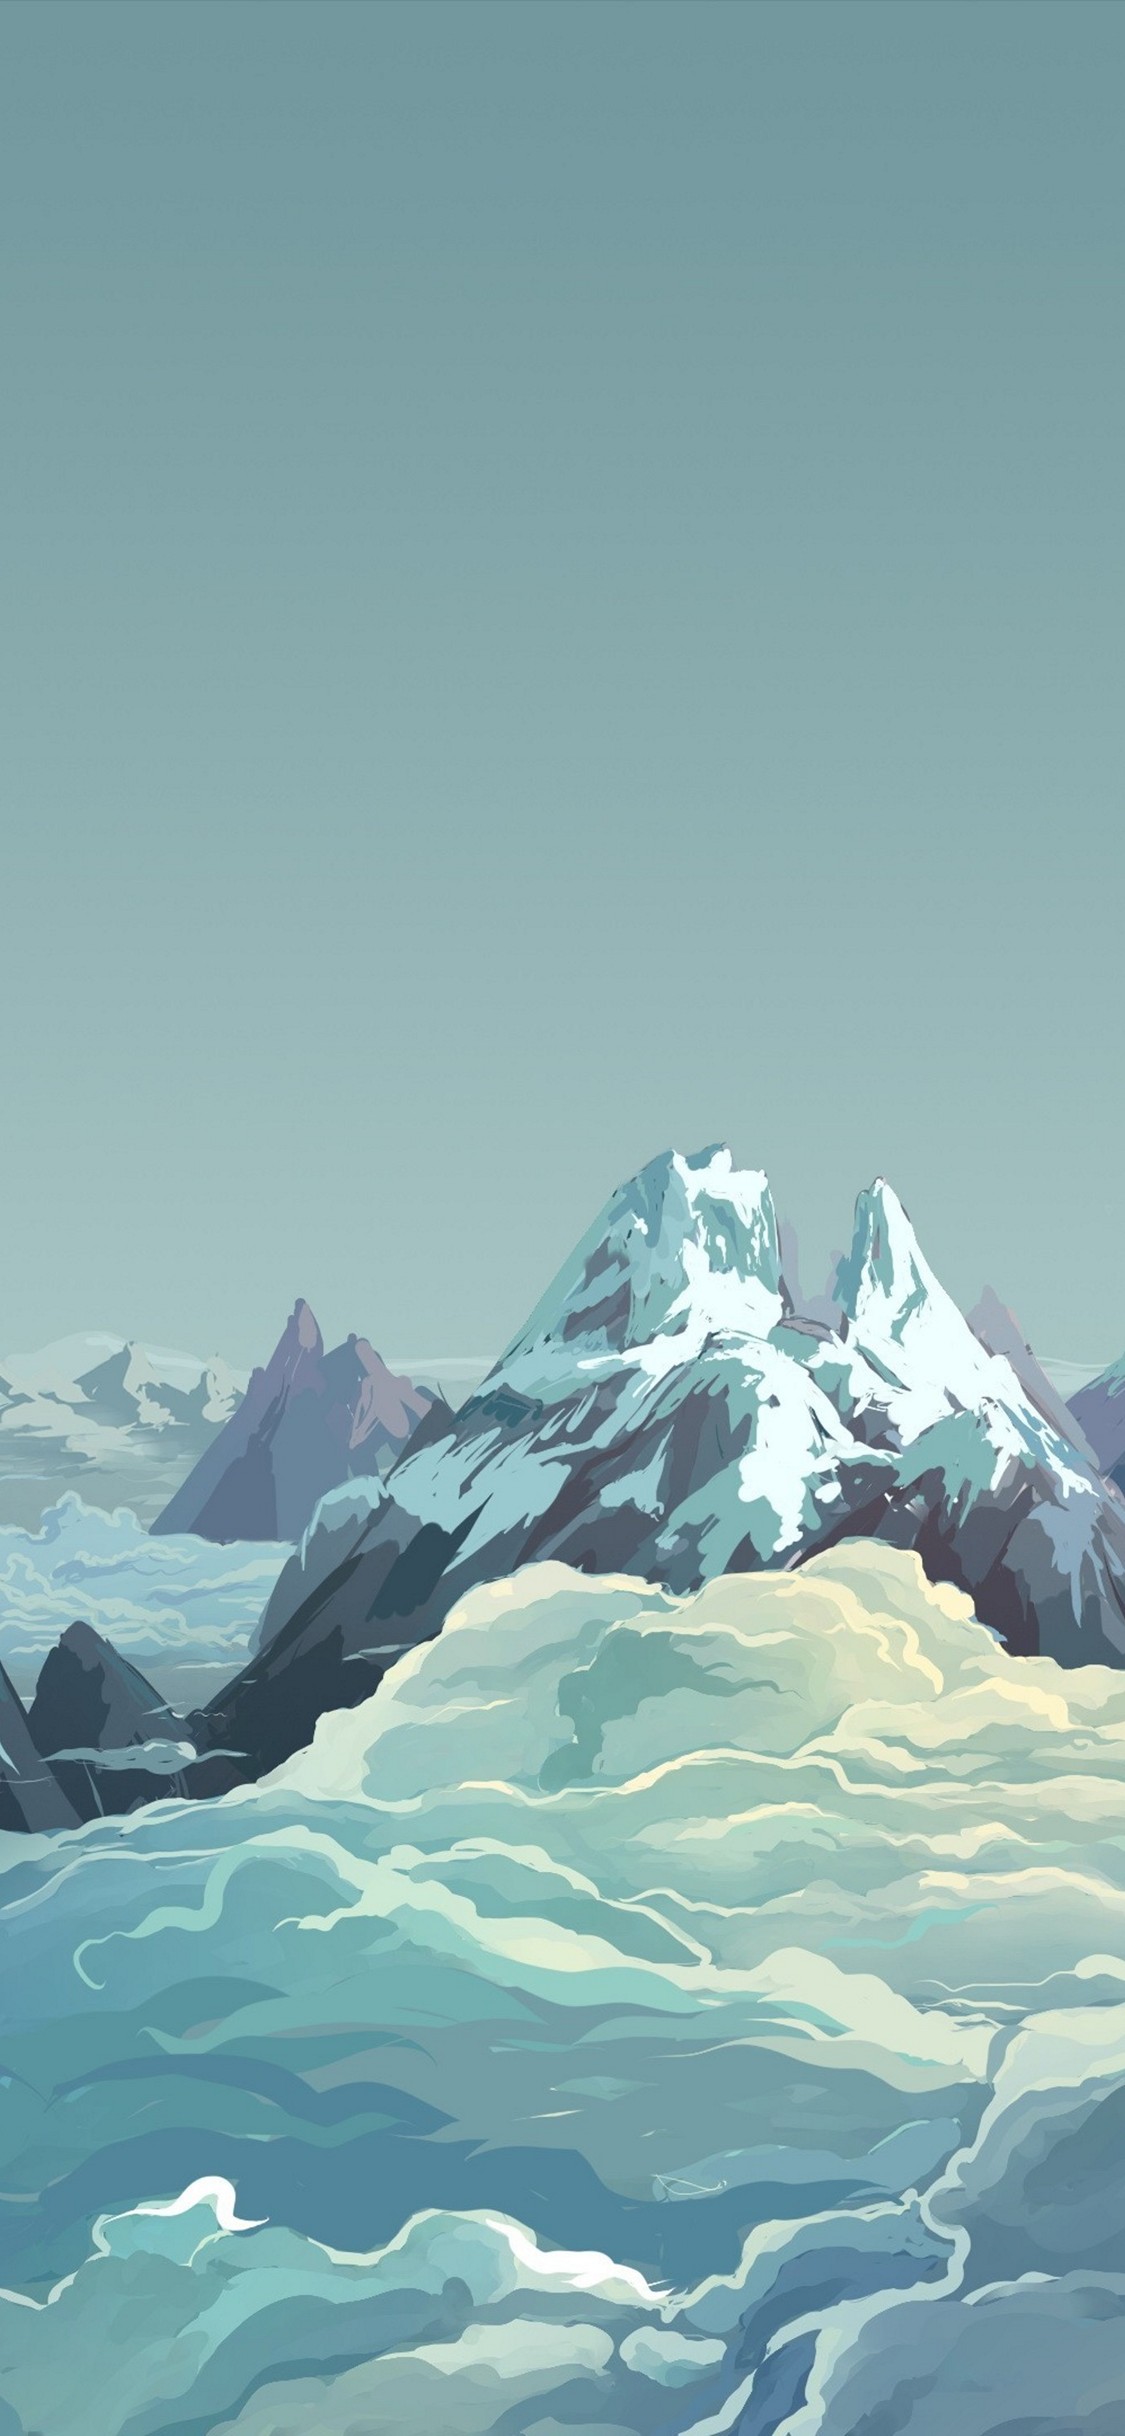 雪山と雲と空のイラスト Iphone X スマホ壁紙 待ち受け スマラン